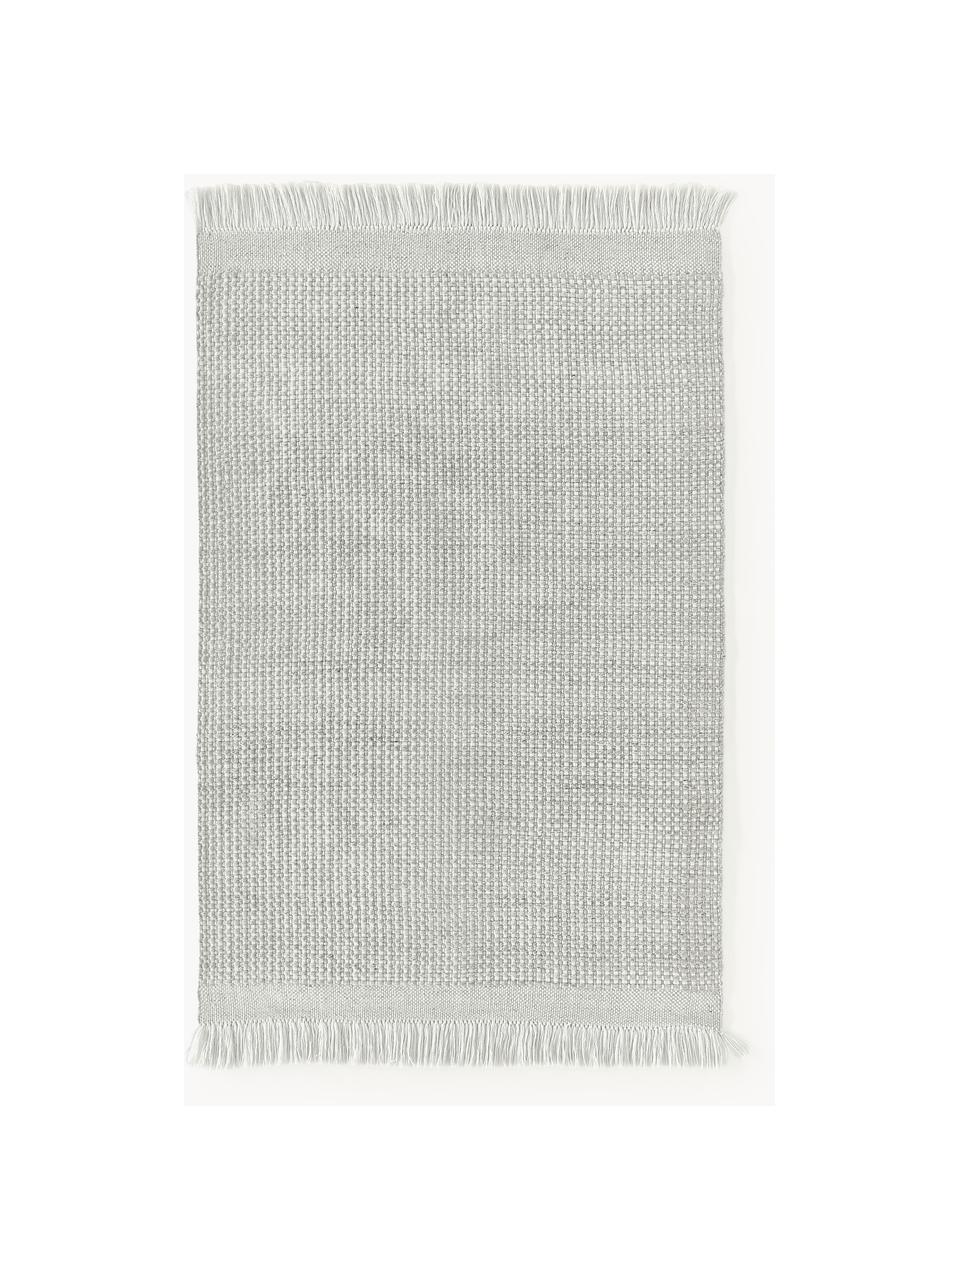 Flachgewebter Teppich Ryder mit Fransen, 100 % Polyester, GRS-zertifiziert, Hellgrau, Weiss, B 120 x L 180 cm (Grösse S)